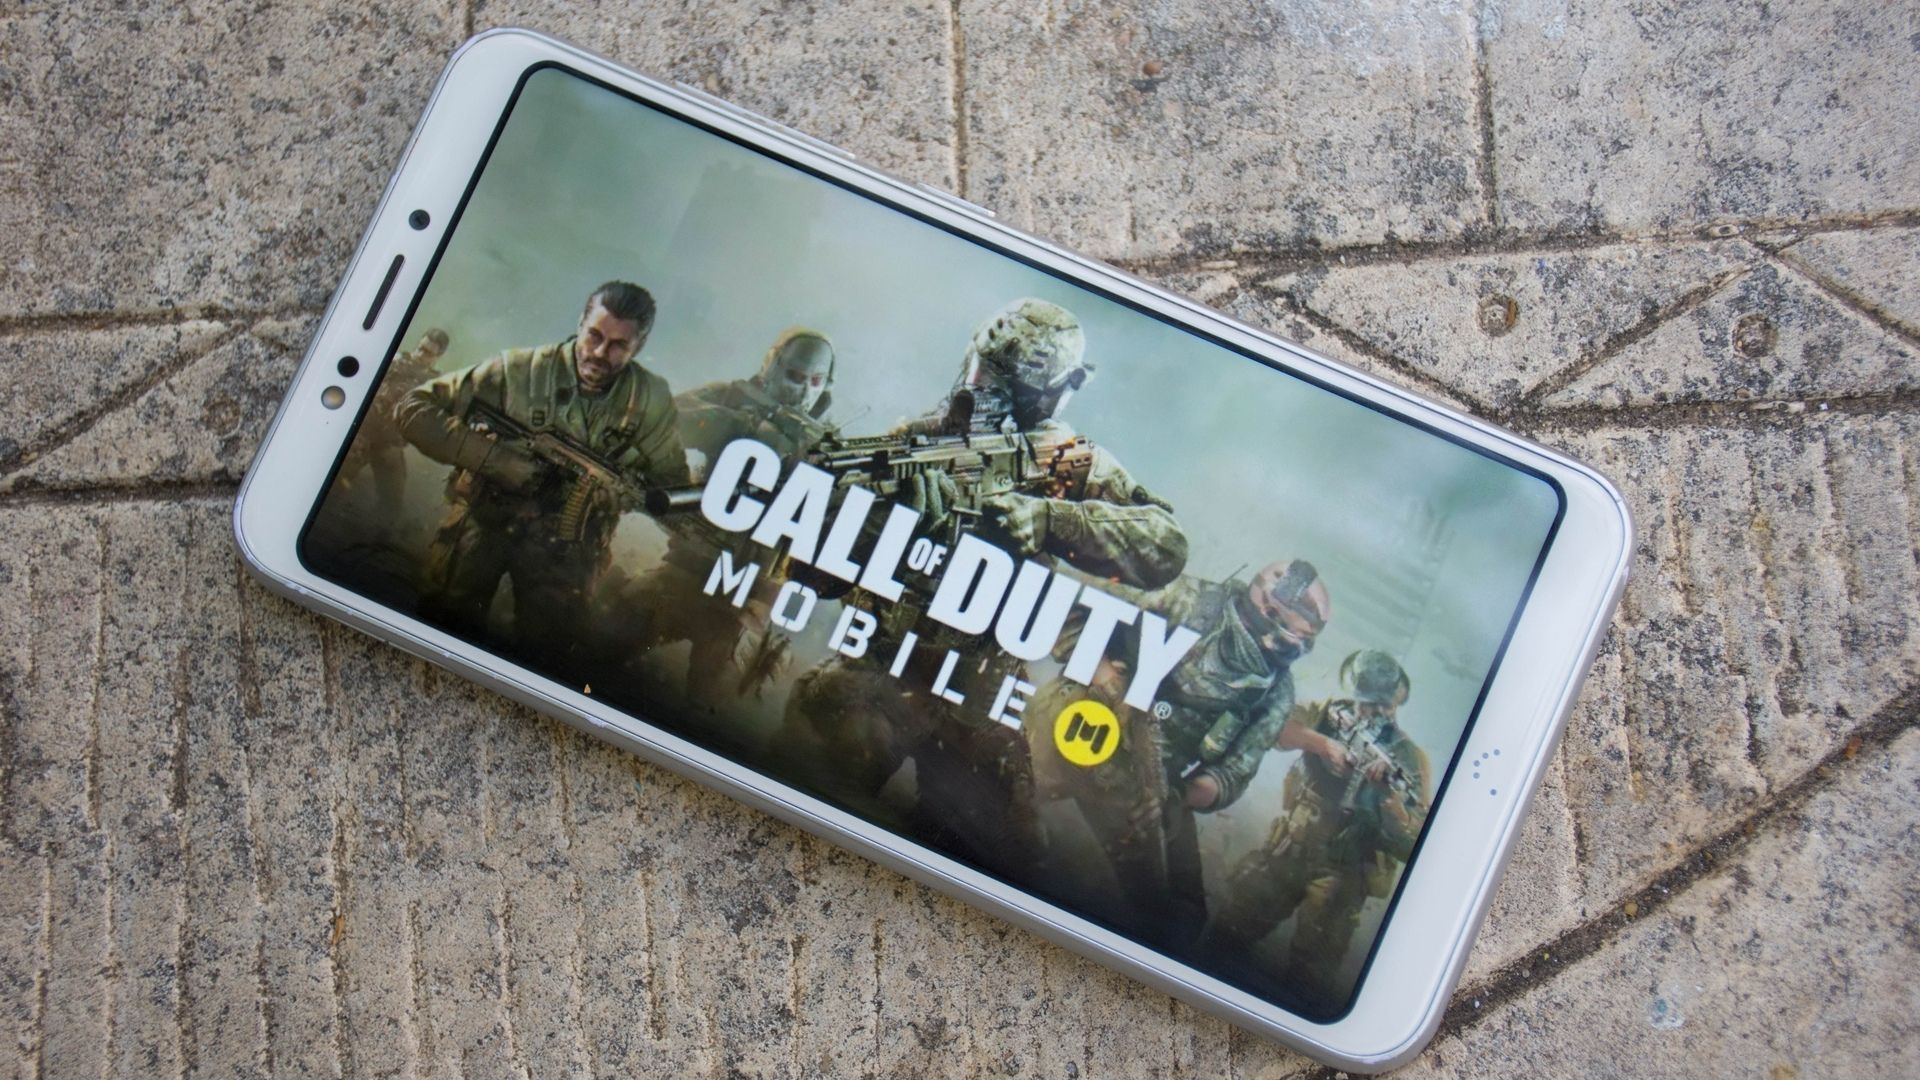 Call of Duty Mobile: nove celulares baratos para jogar o jogo de